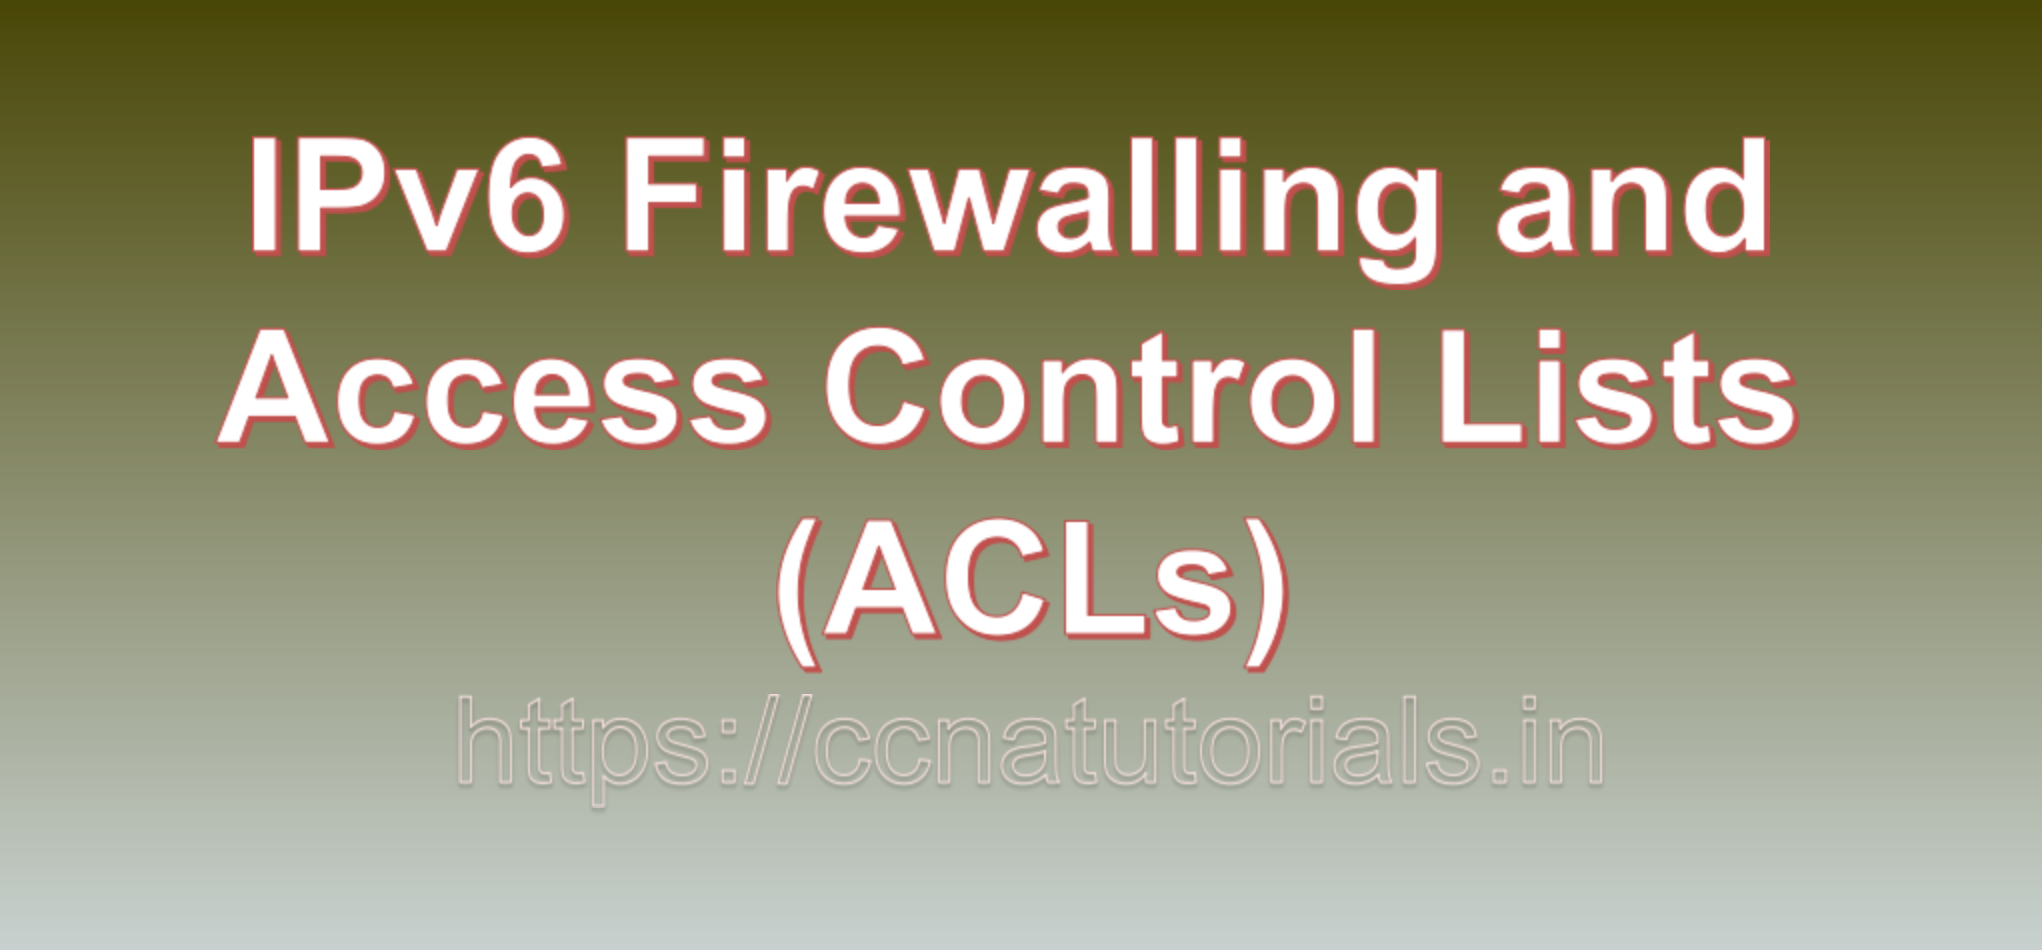 IPv6 Firewalling and Access Control Lists (ACLs), ccna, ccna tutorials